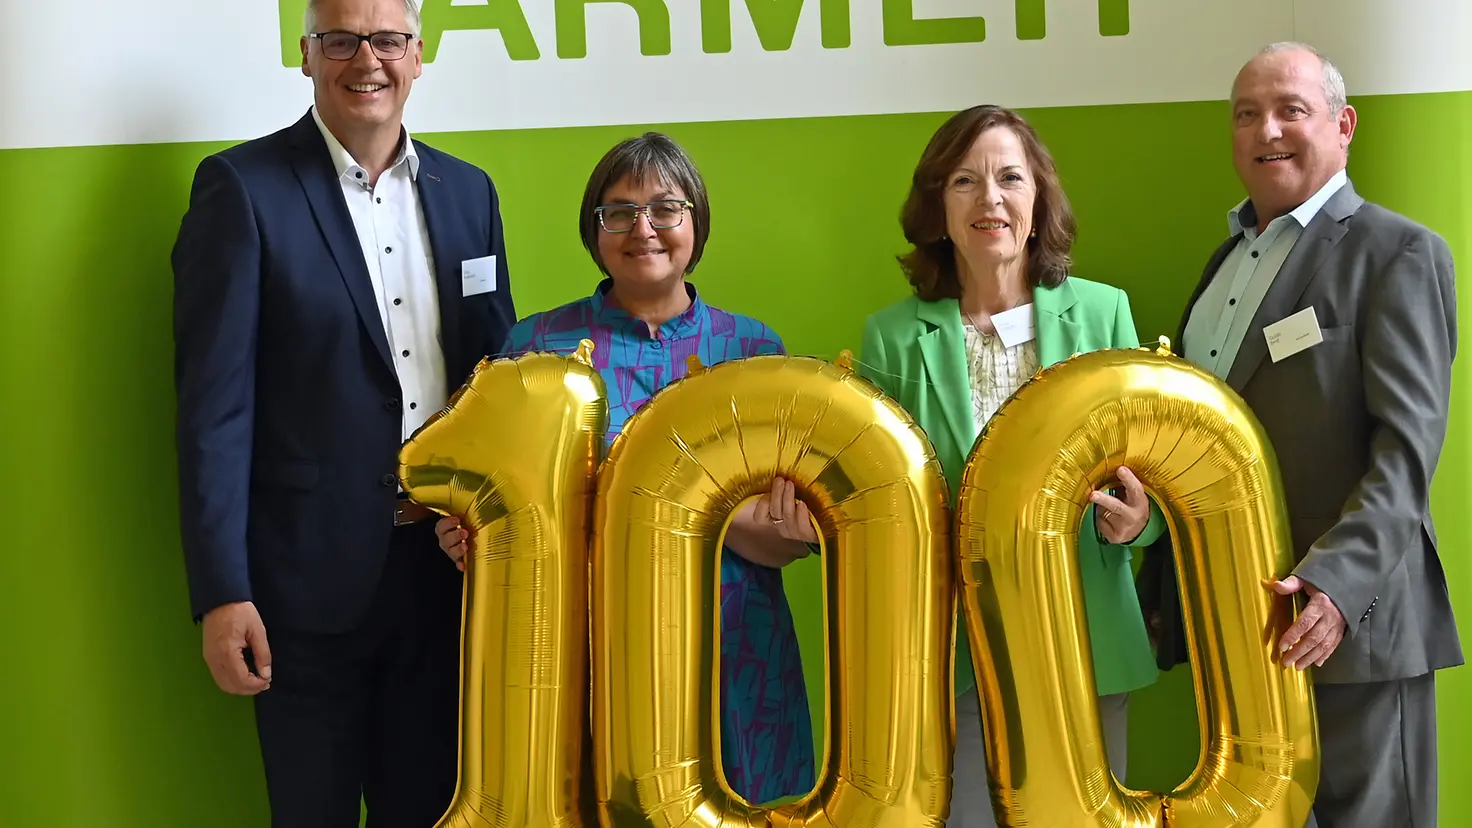 BARMER-Beschäftigte und die Trierer Bürgermeisterin stehen vor ein Wand und halten einen goldenen 100-Luftballon vor sich.